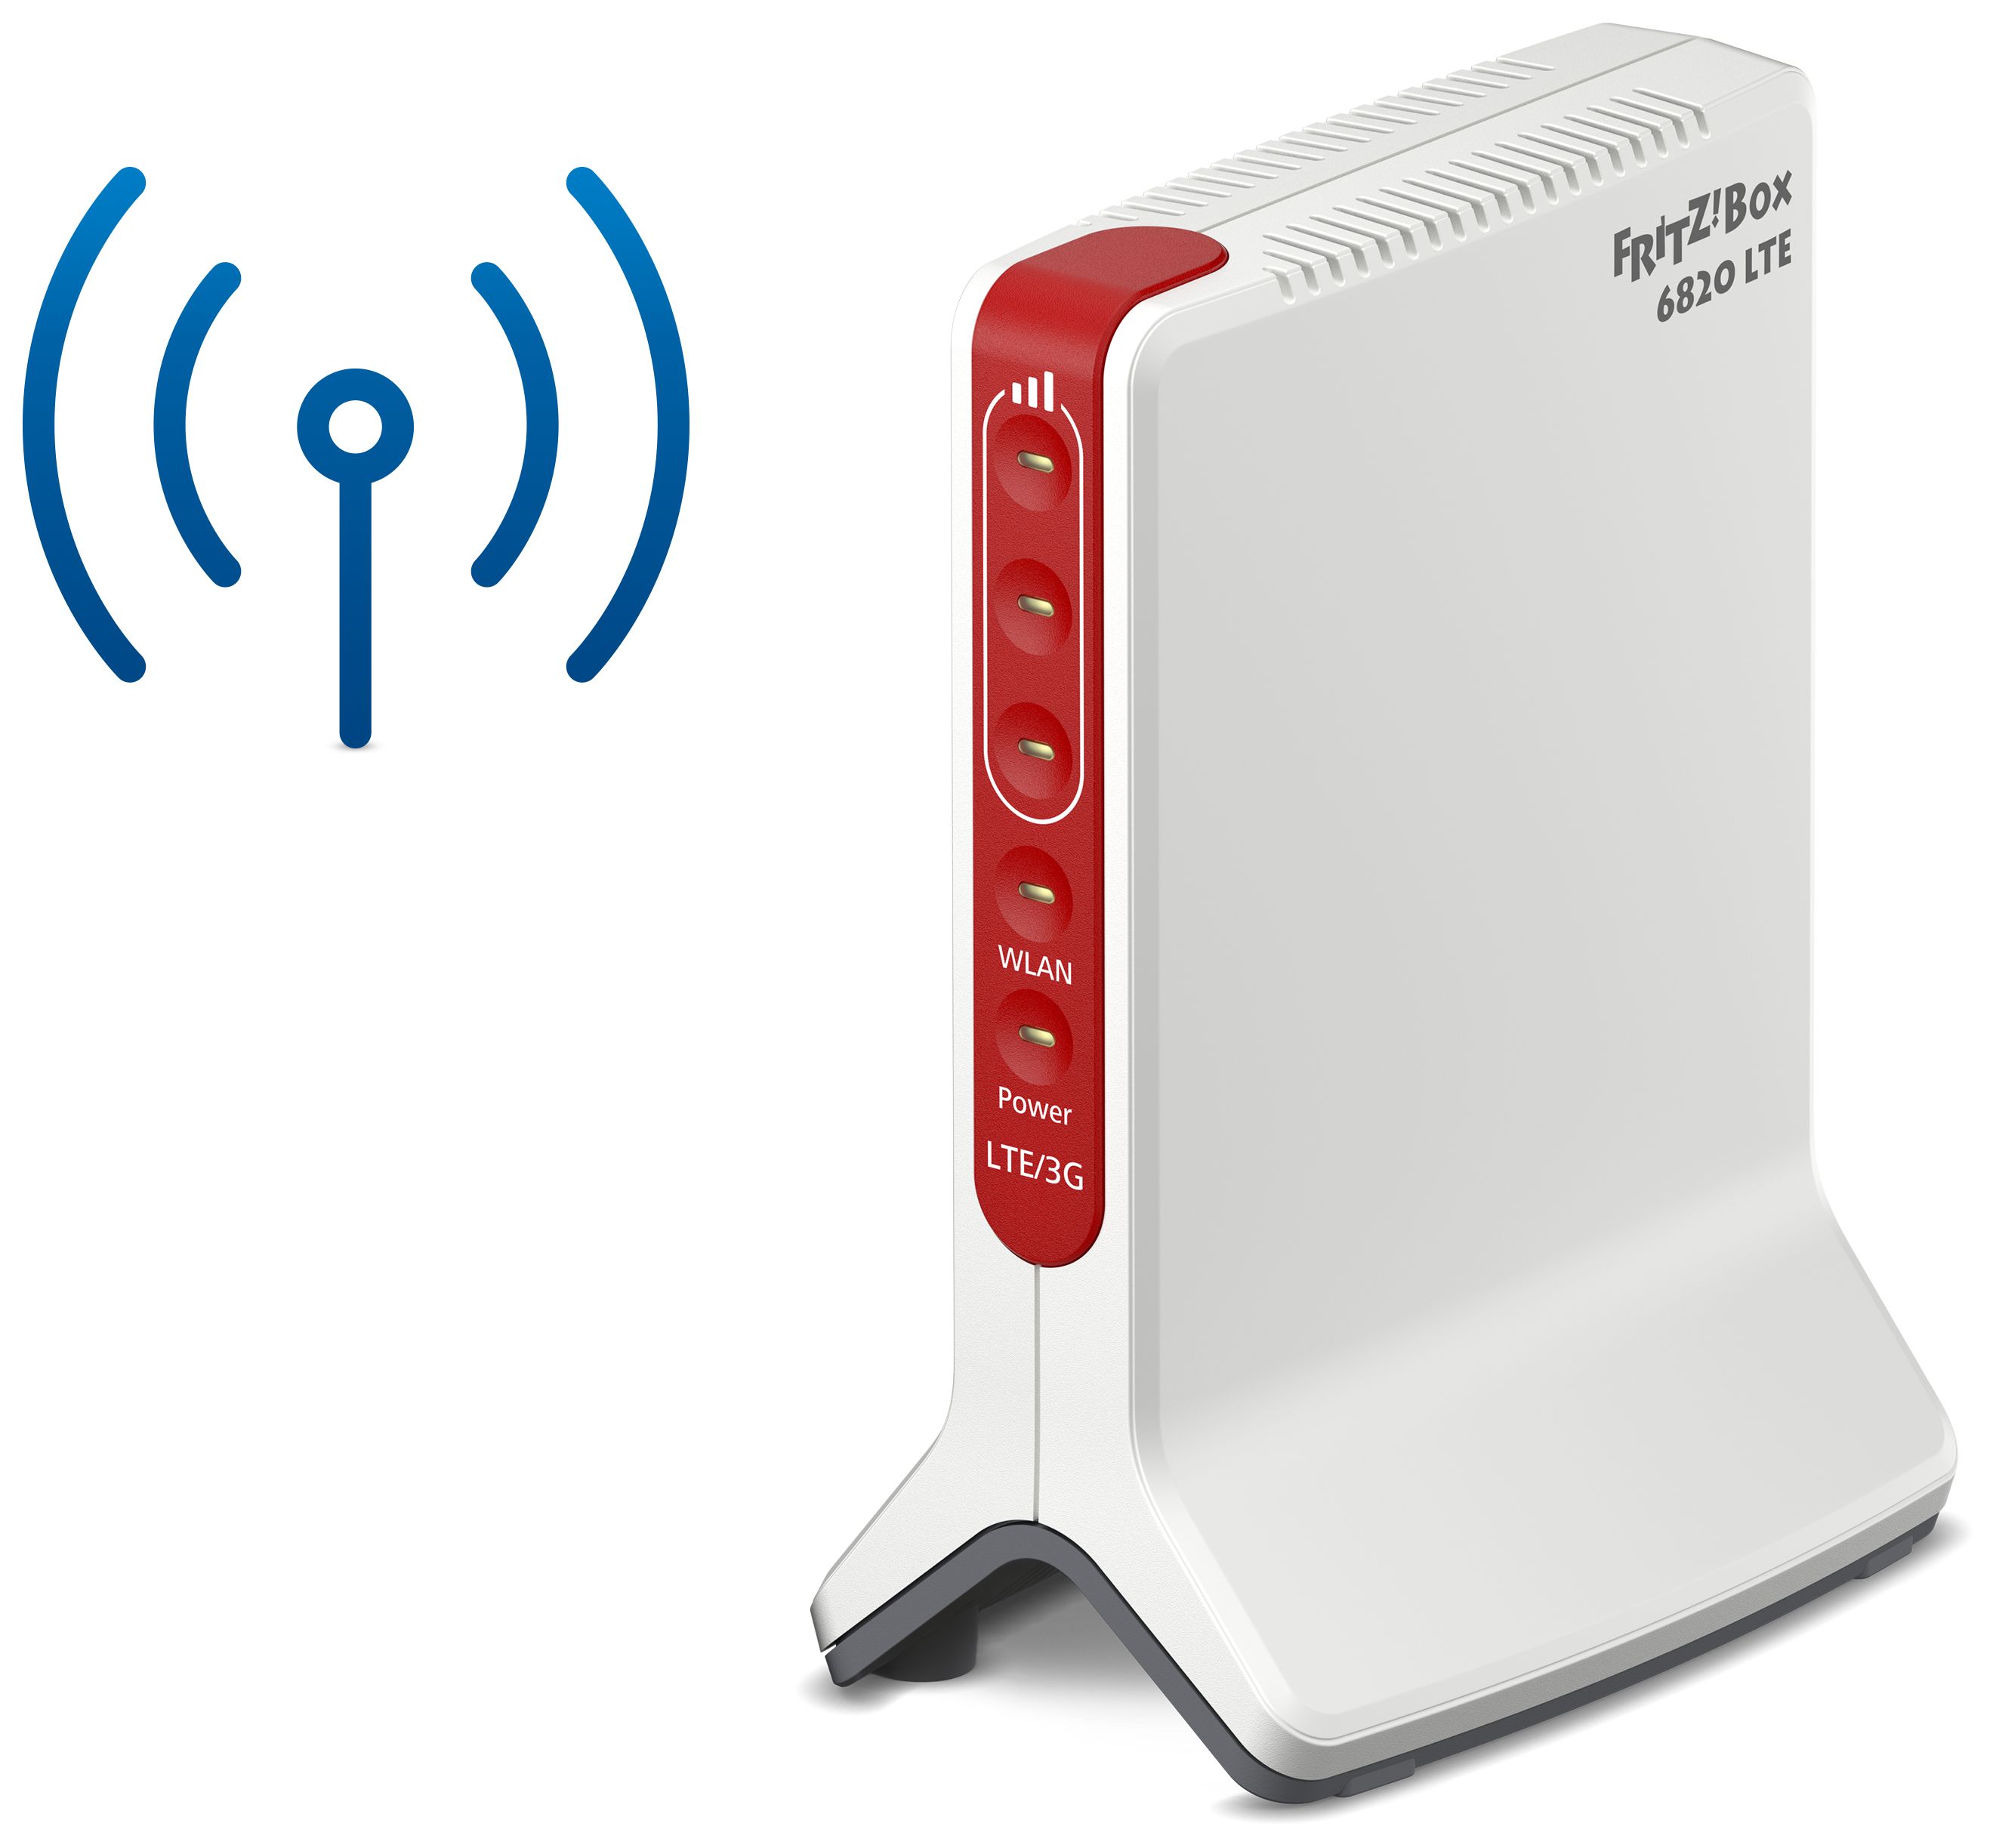 AVM FRITZ!Box 6820 LTE Wi-Fi 4 (802.11n) Router Einzelband (2,4GHz) 450  Mbit/s von expert Technomarkt